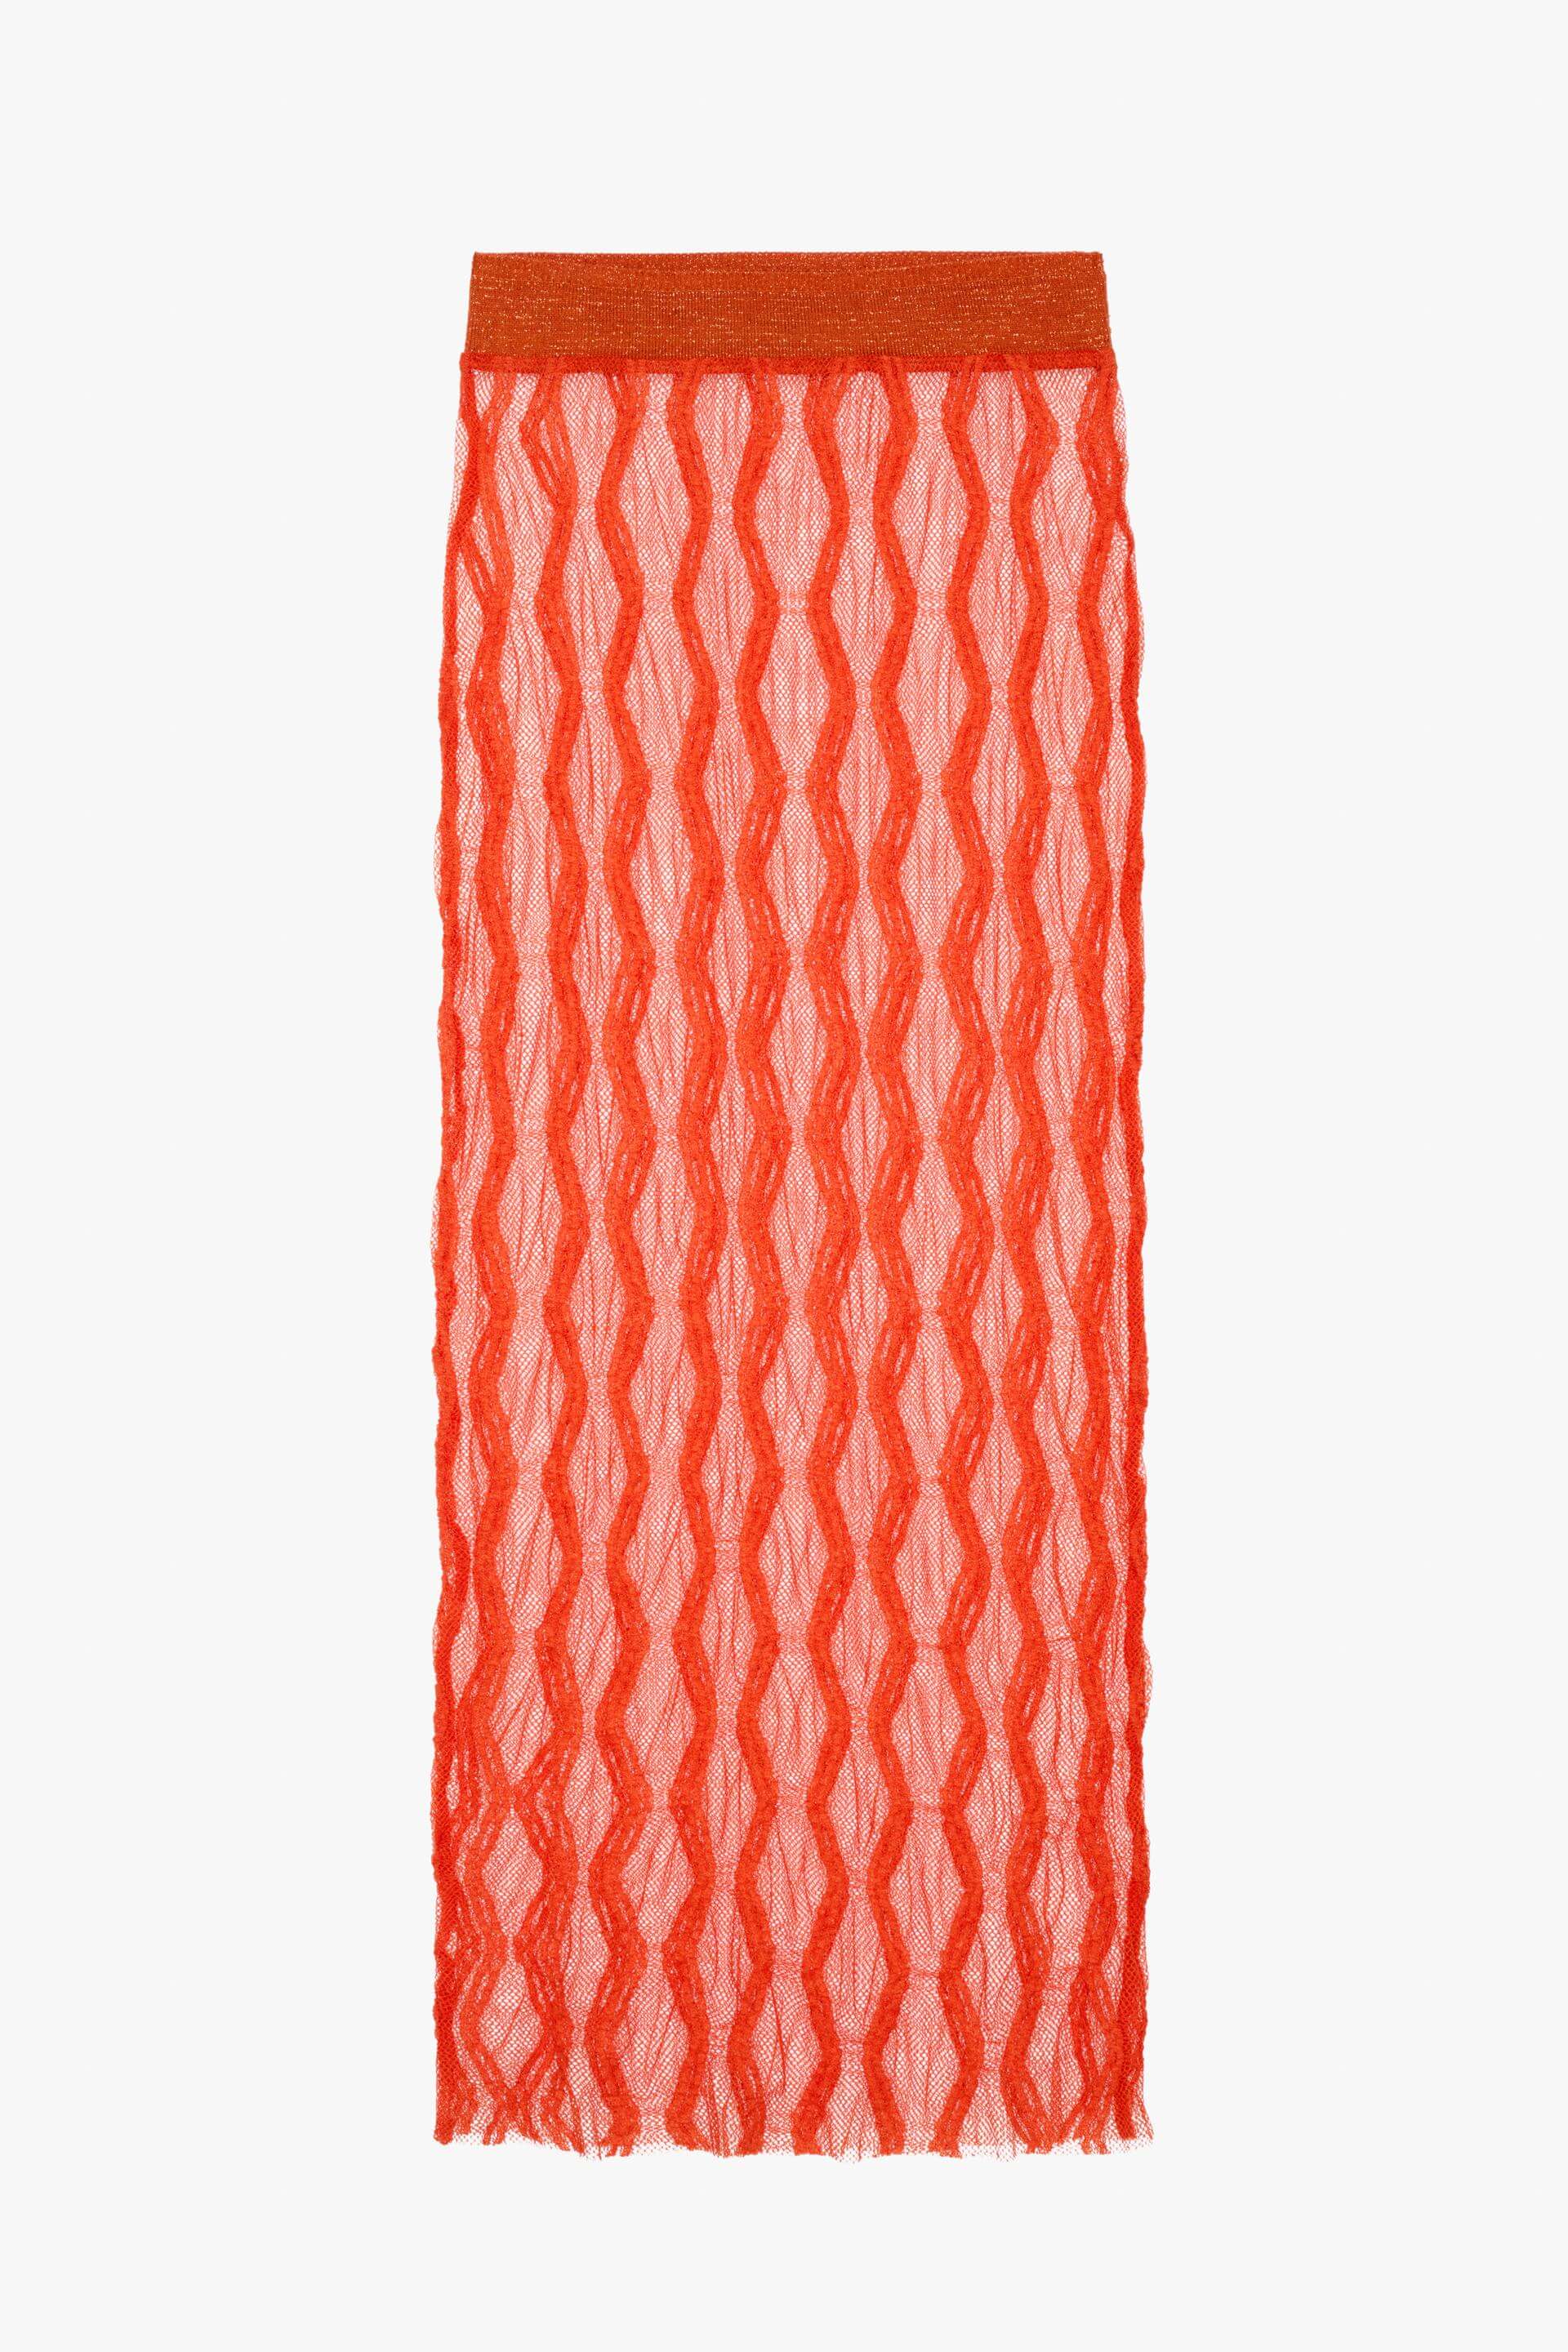 Юбка Zara Knit - Limited Edition, оранжевый юбка zara knit серый